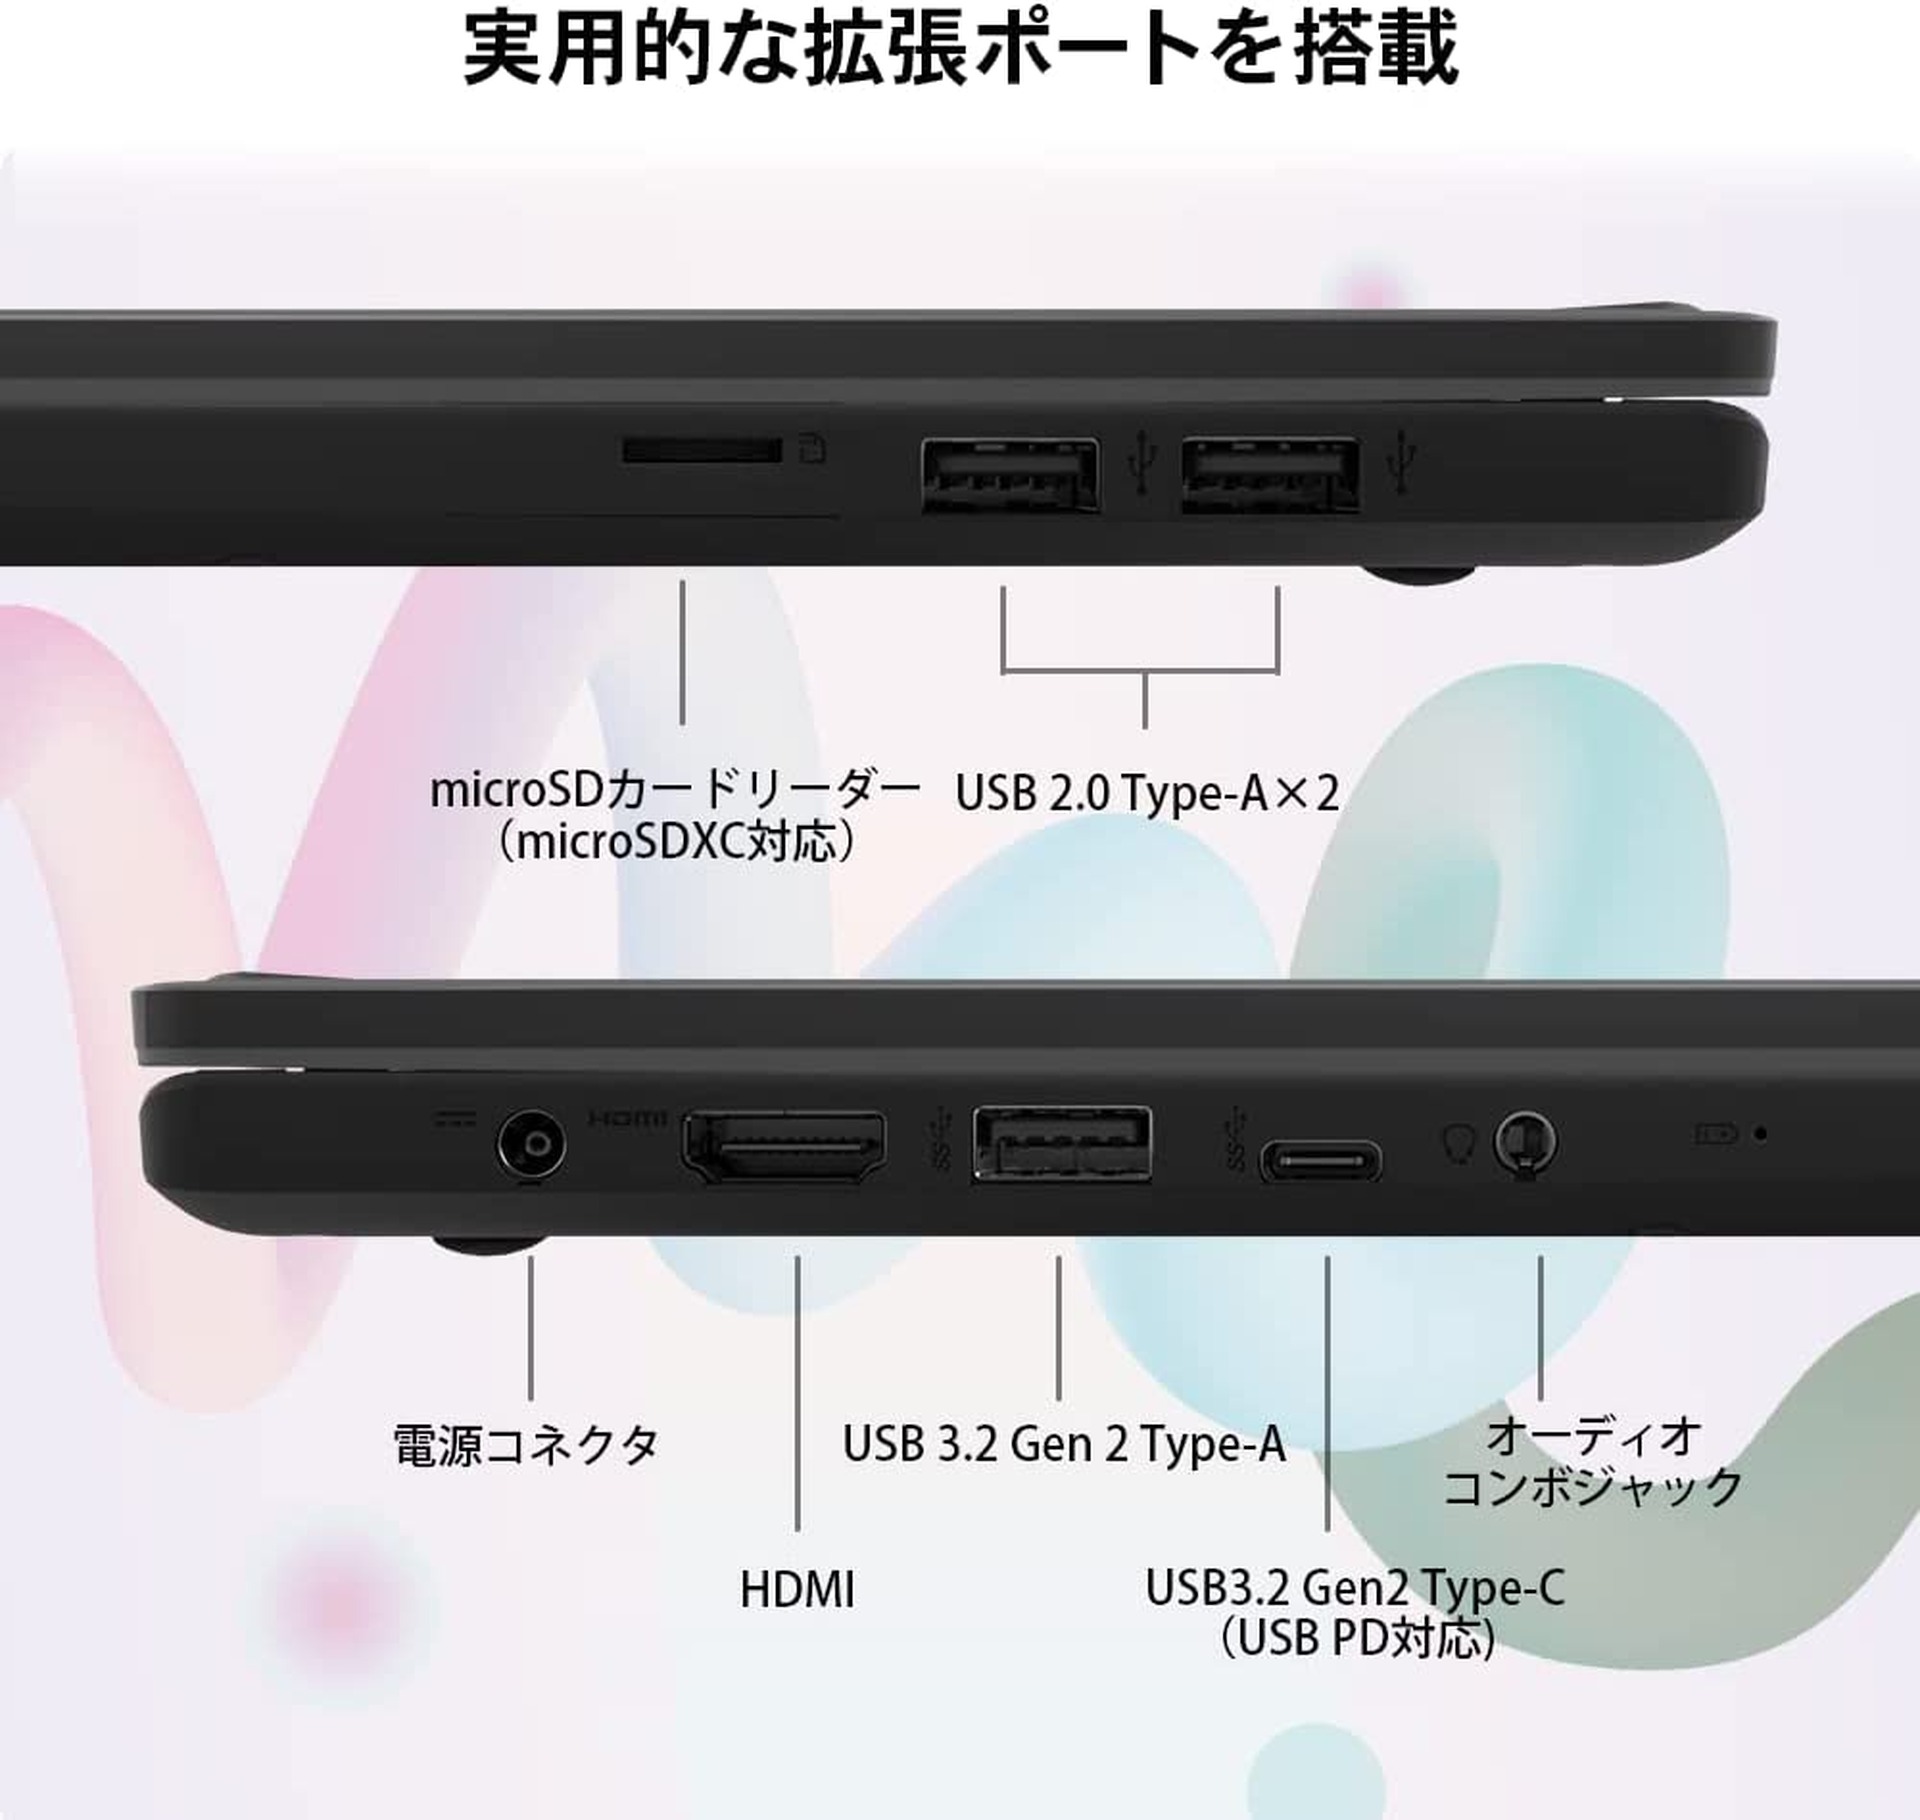 14型1.3kgのi3ノートが6万円切る特価。AmazonでMSI製ノートPC